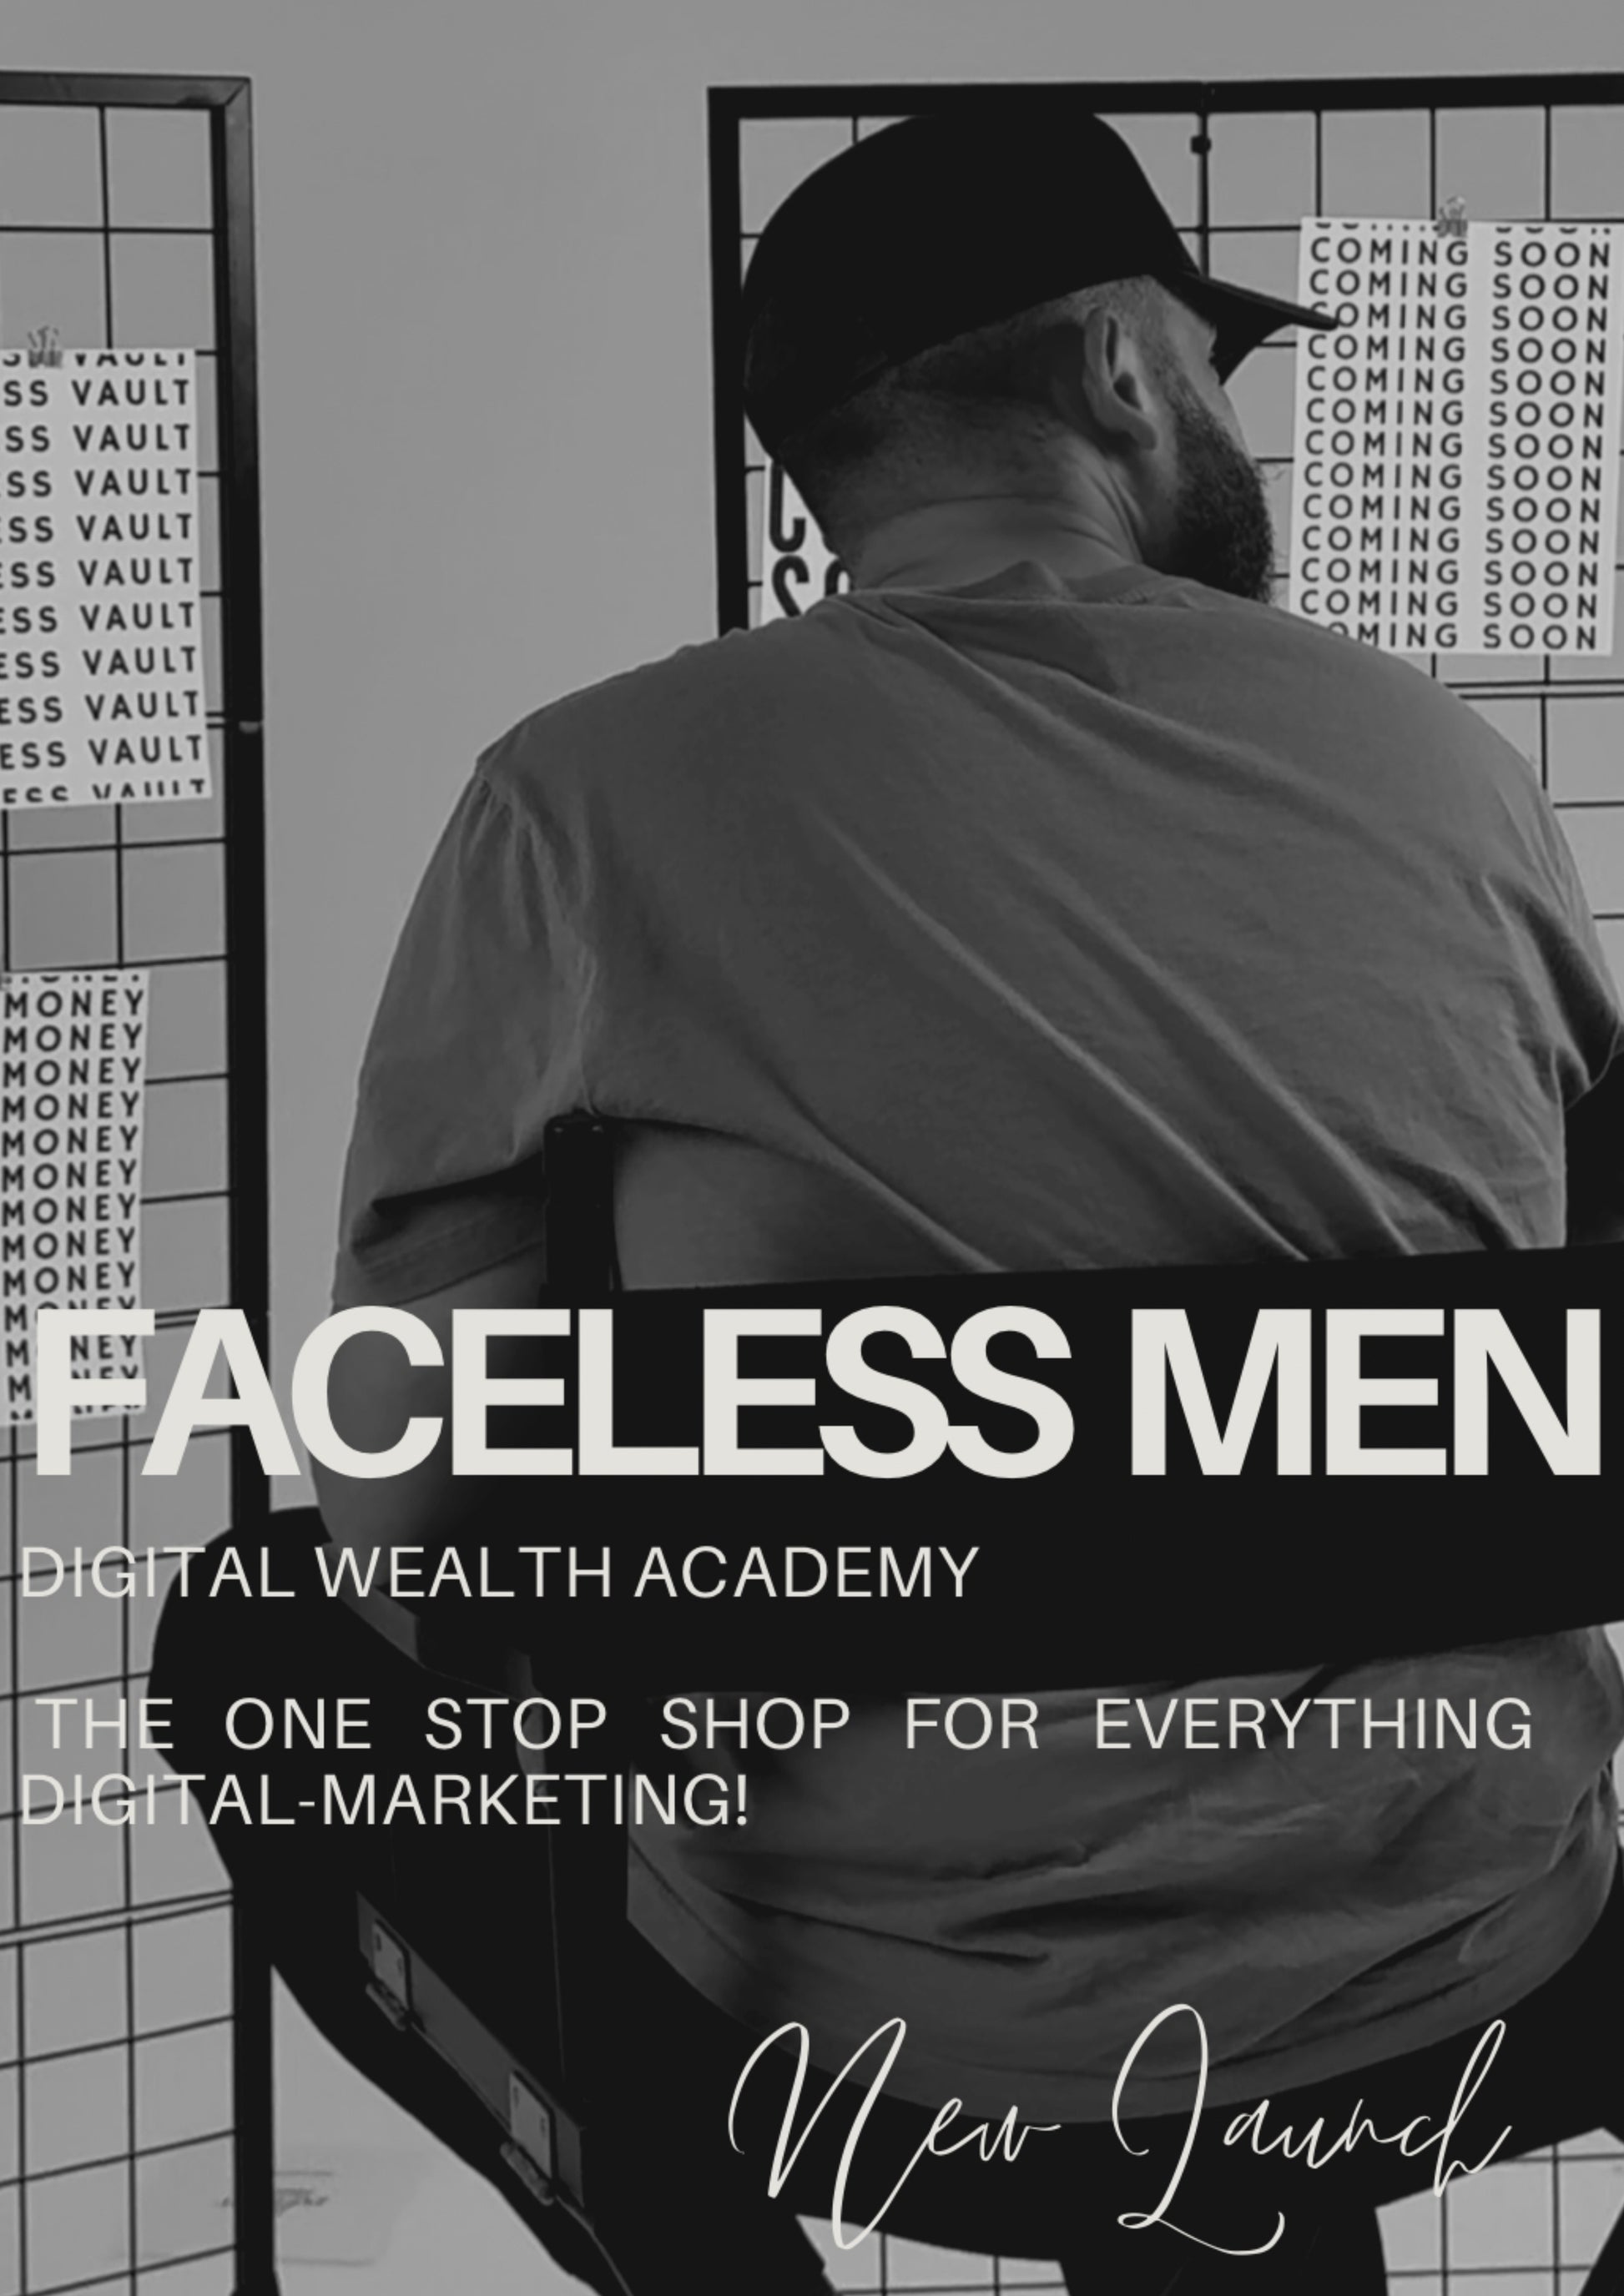 Faceless Men Wealth Guide – Garnett Global Enterprises LLC